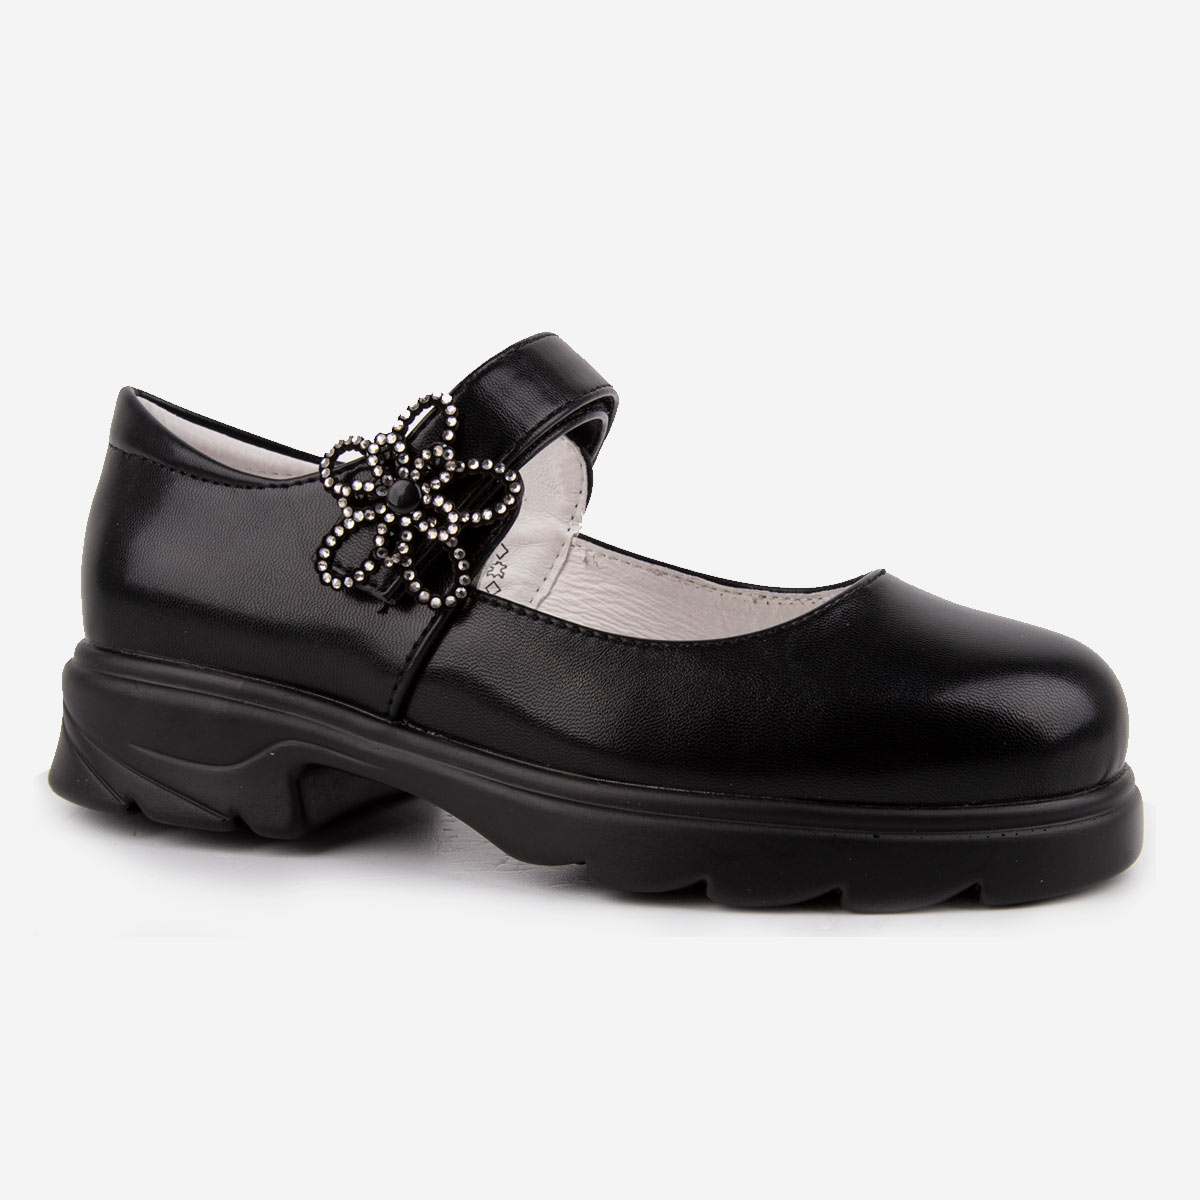 Купить Туфли для девочек Kapika 23877п цв. черный р. 31,